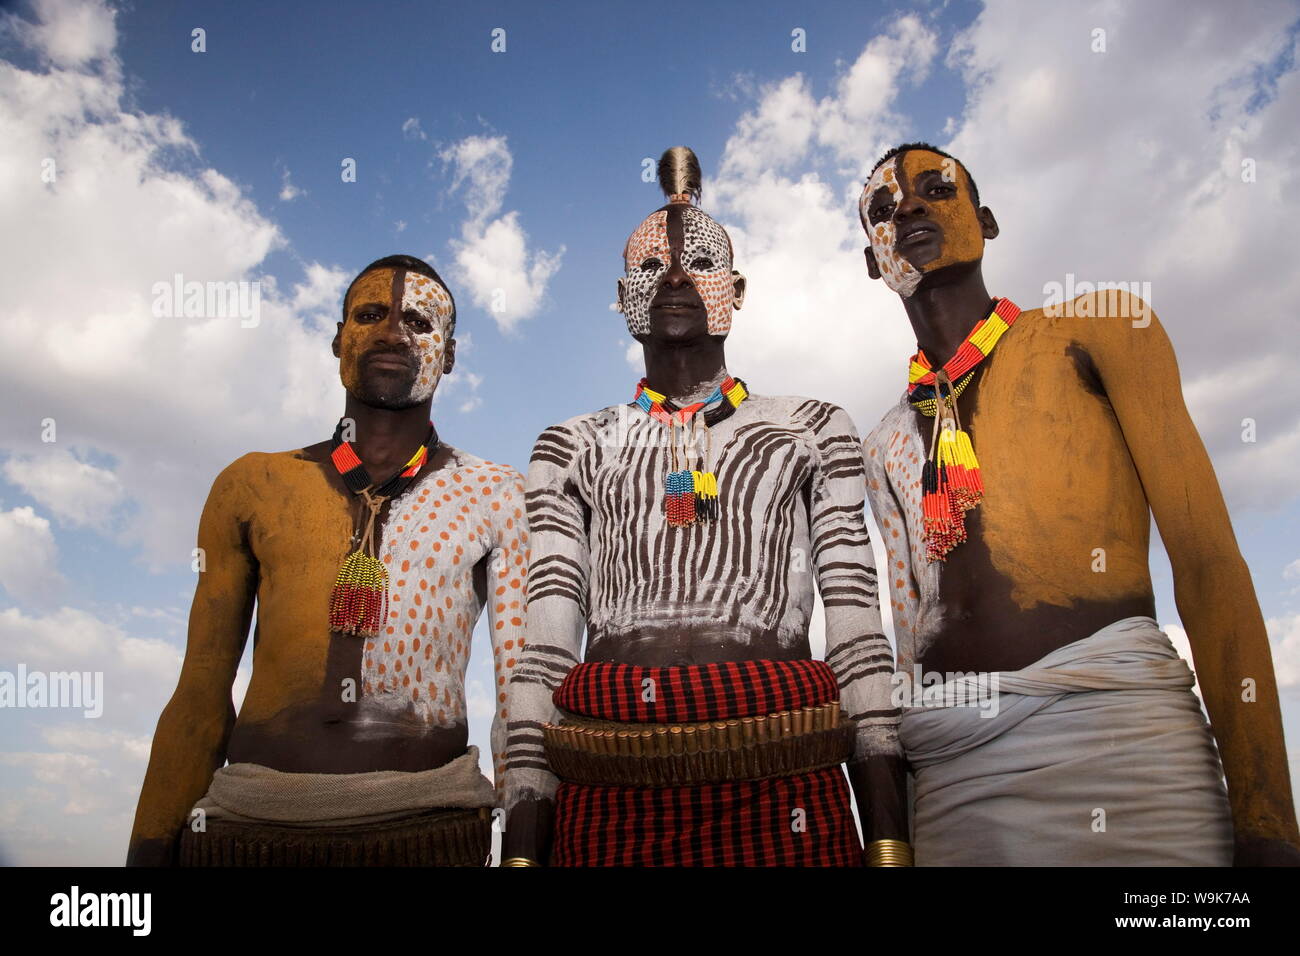 Ritratto di tre Karo tribesmen con visi e corpi verniciati con chalk imitando il piumaggio maculato della faraona, Omo, Etiopia Foto Stock